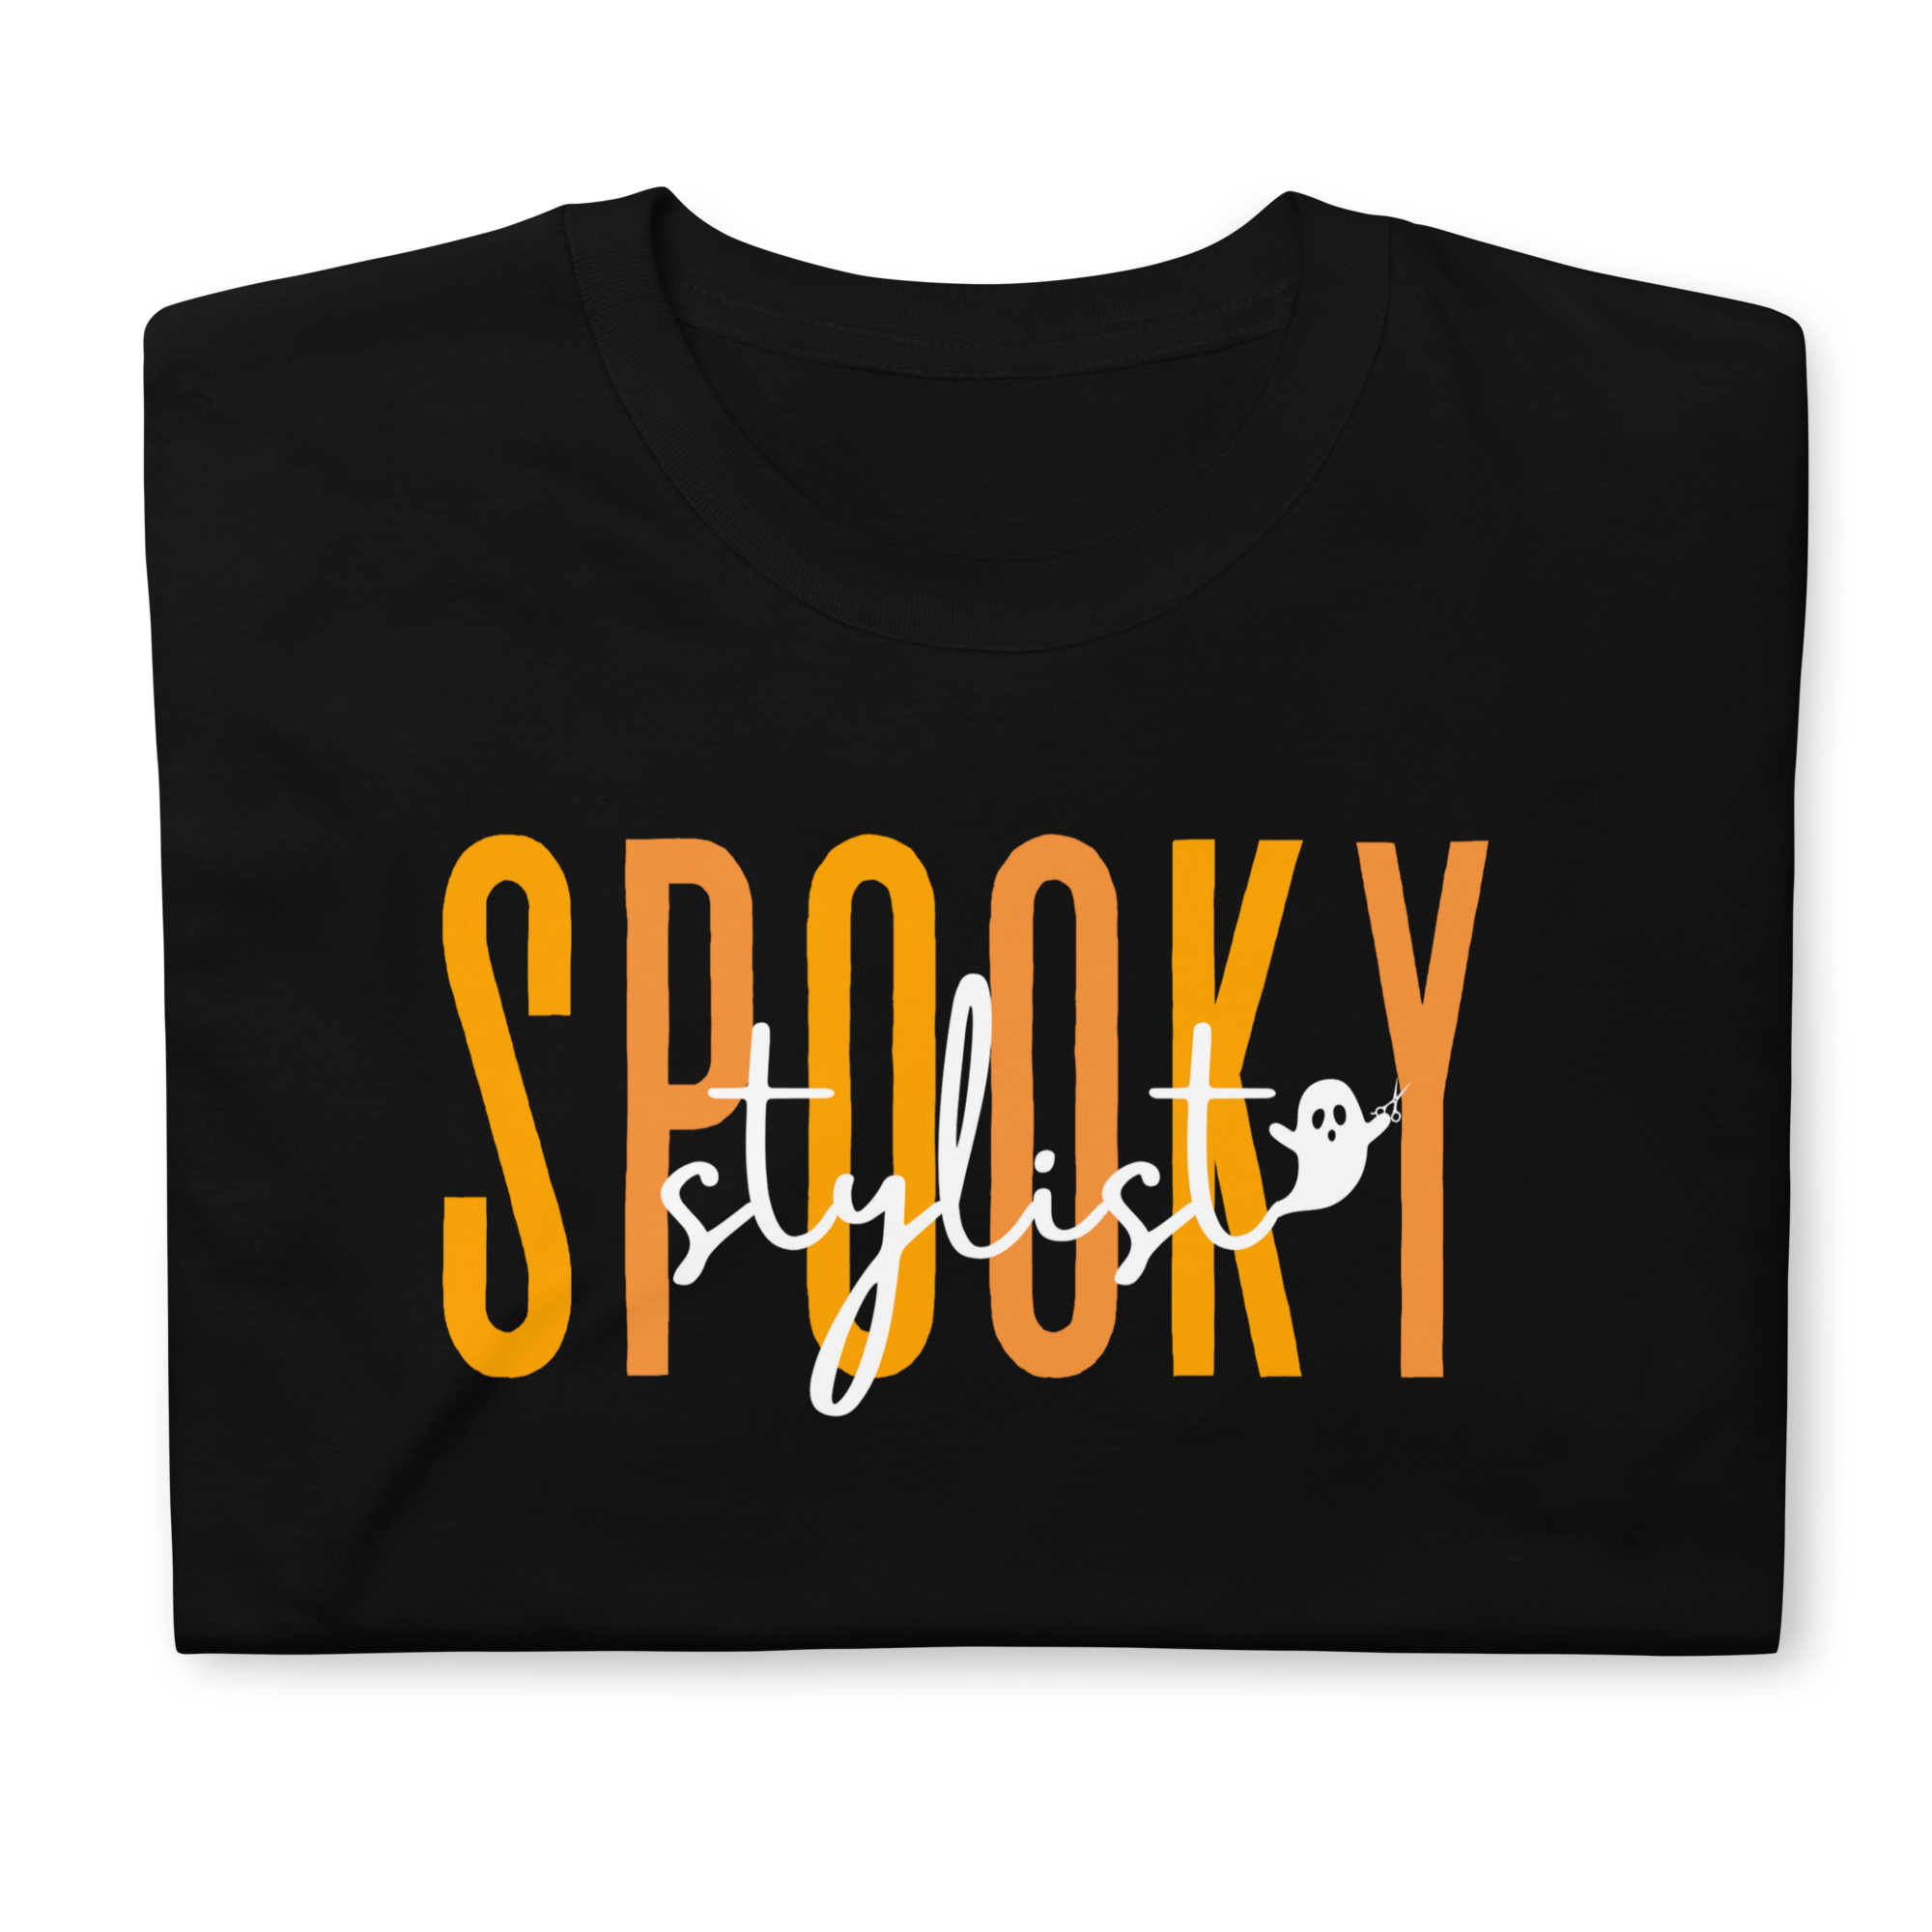 Spooky Stylist Halloween T-Shirt